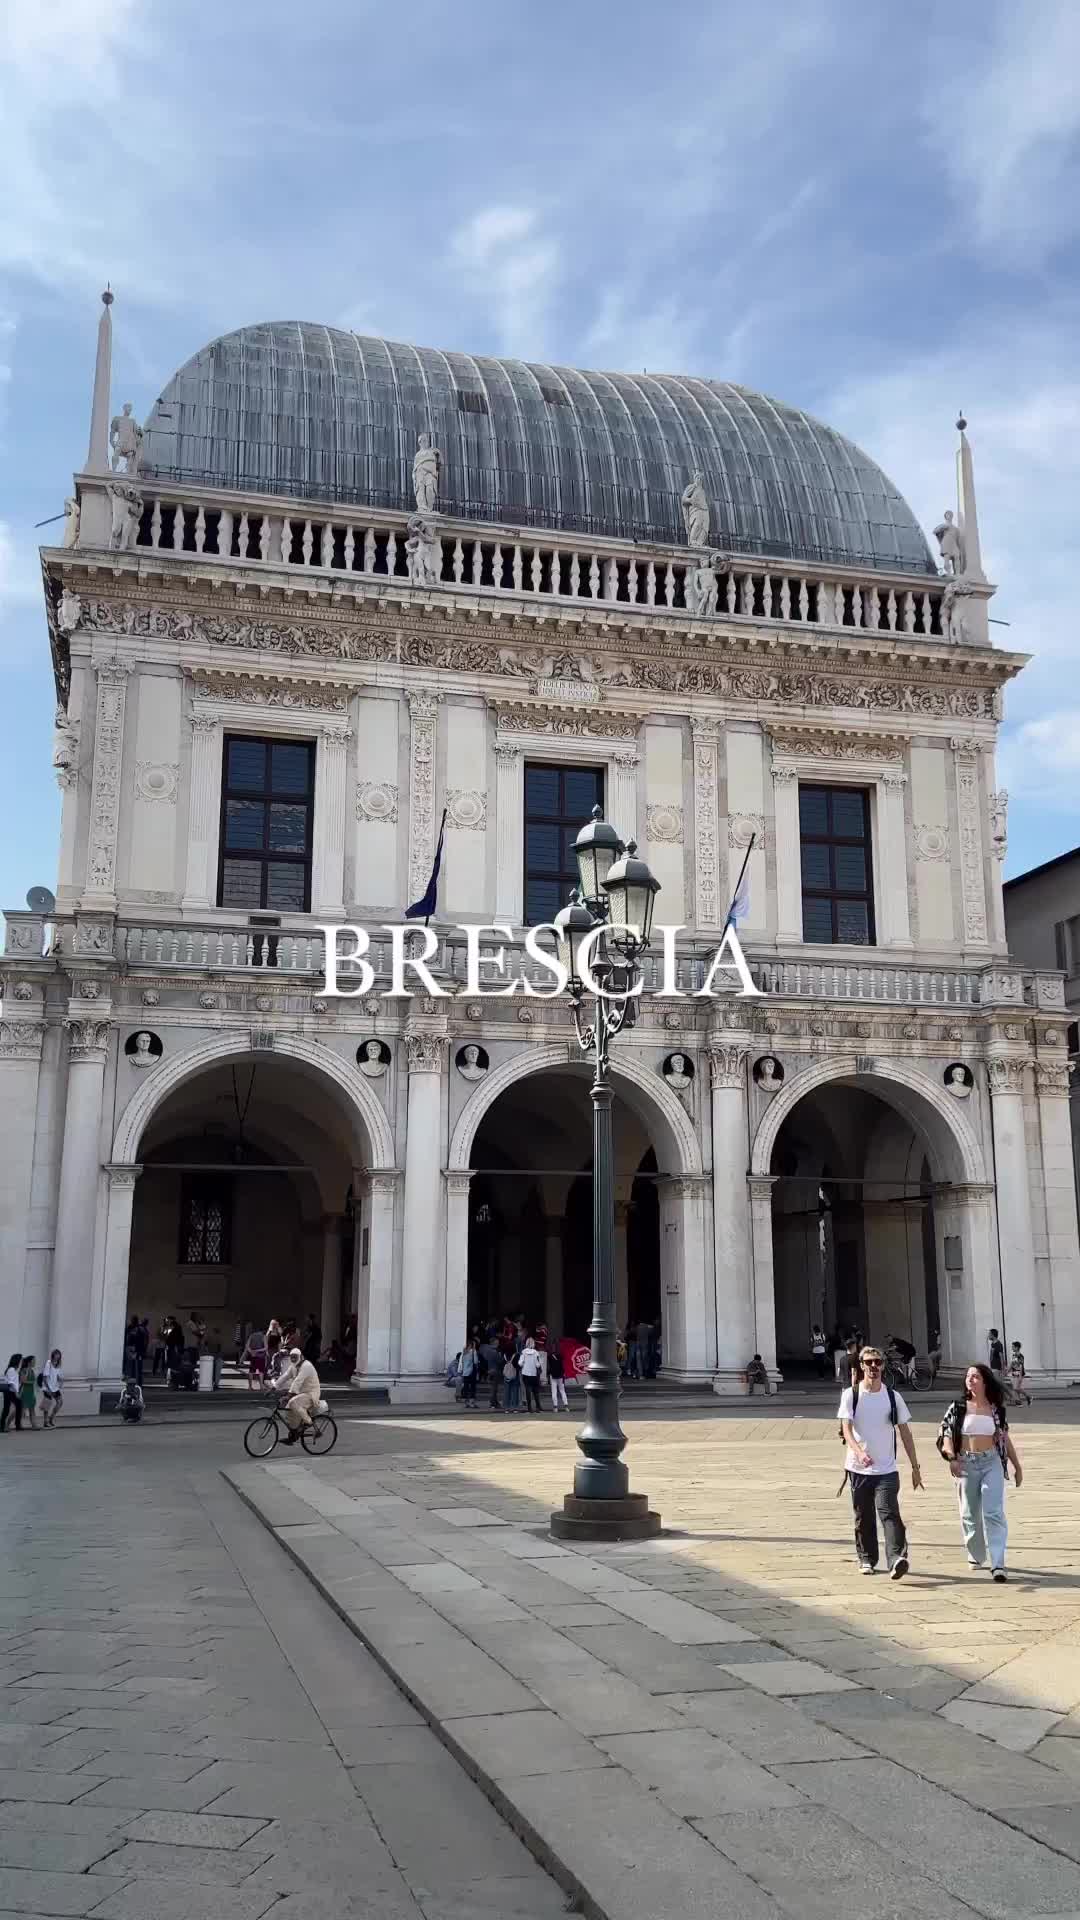 Explore Brescia, Italy - A Day in the Historic City